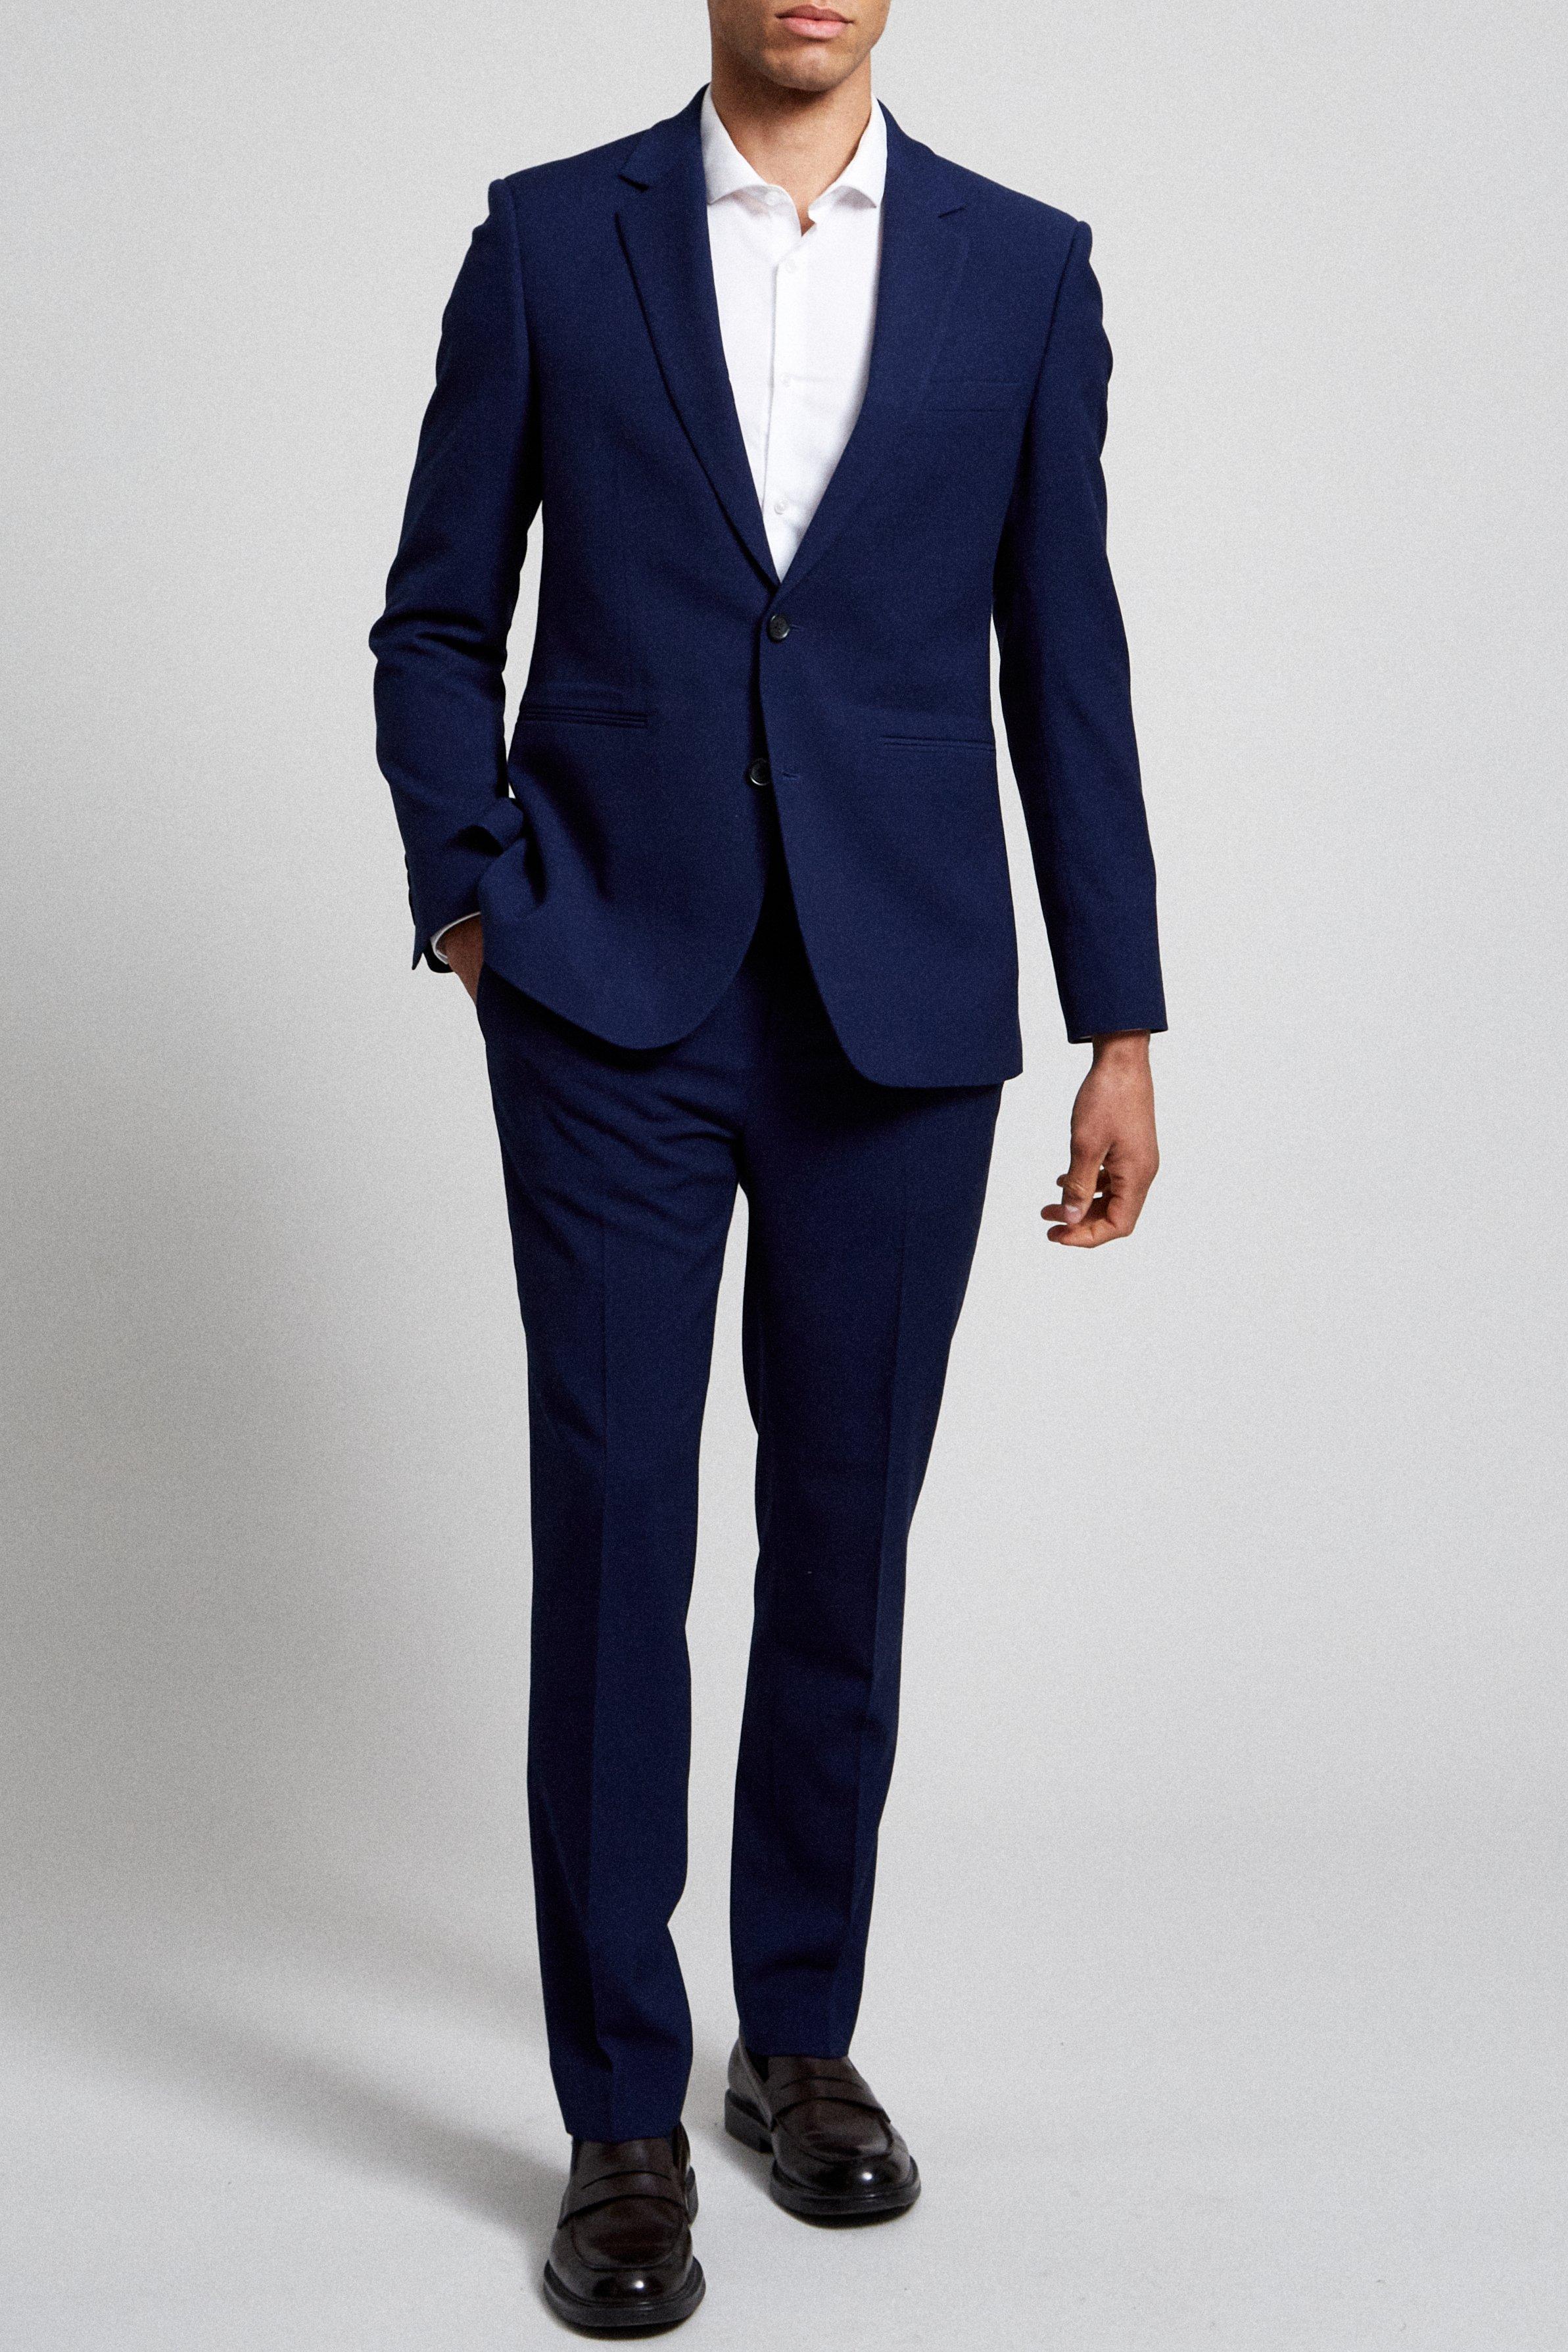 Suits | Slim Fit Blue Texture Suit Jacket | Burton